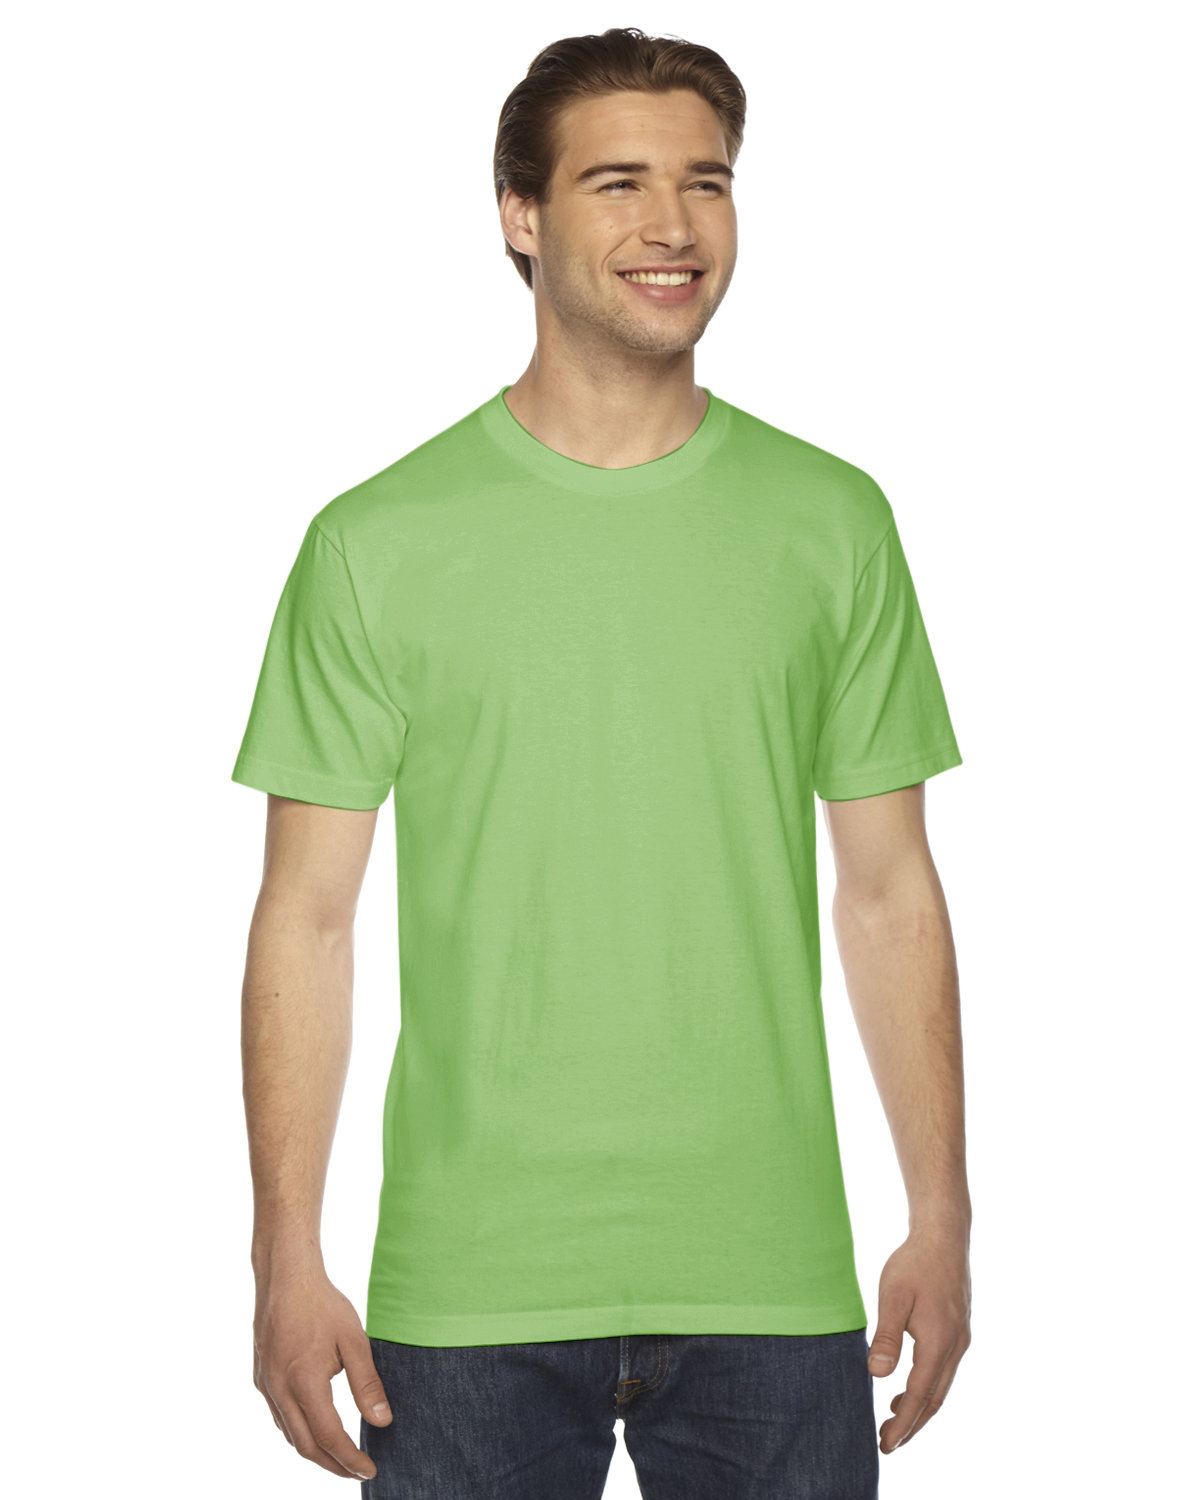 American Apparel Unisex Fine Jersey Short-Sleeve T-Shirt GRASS 